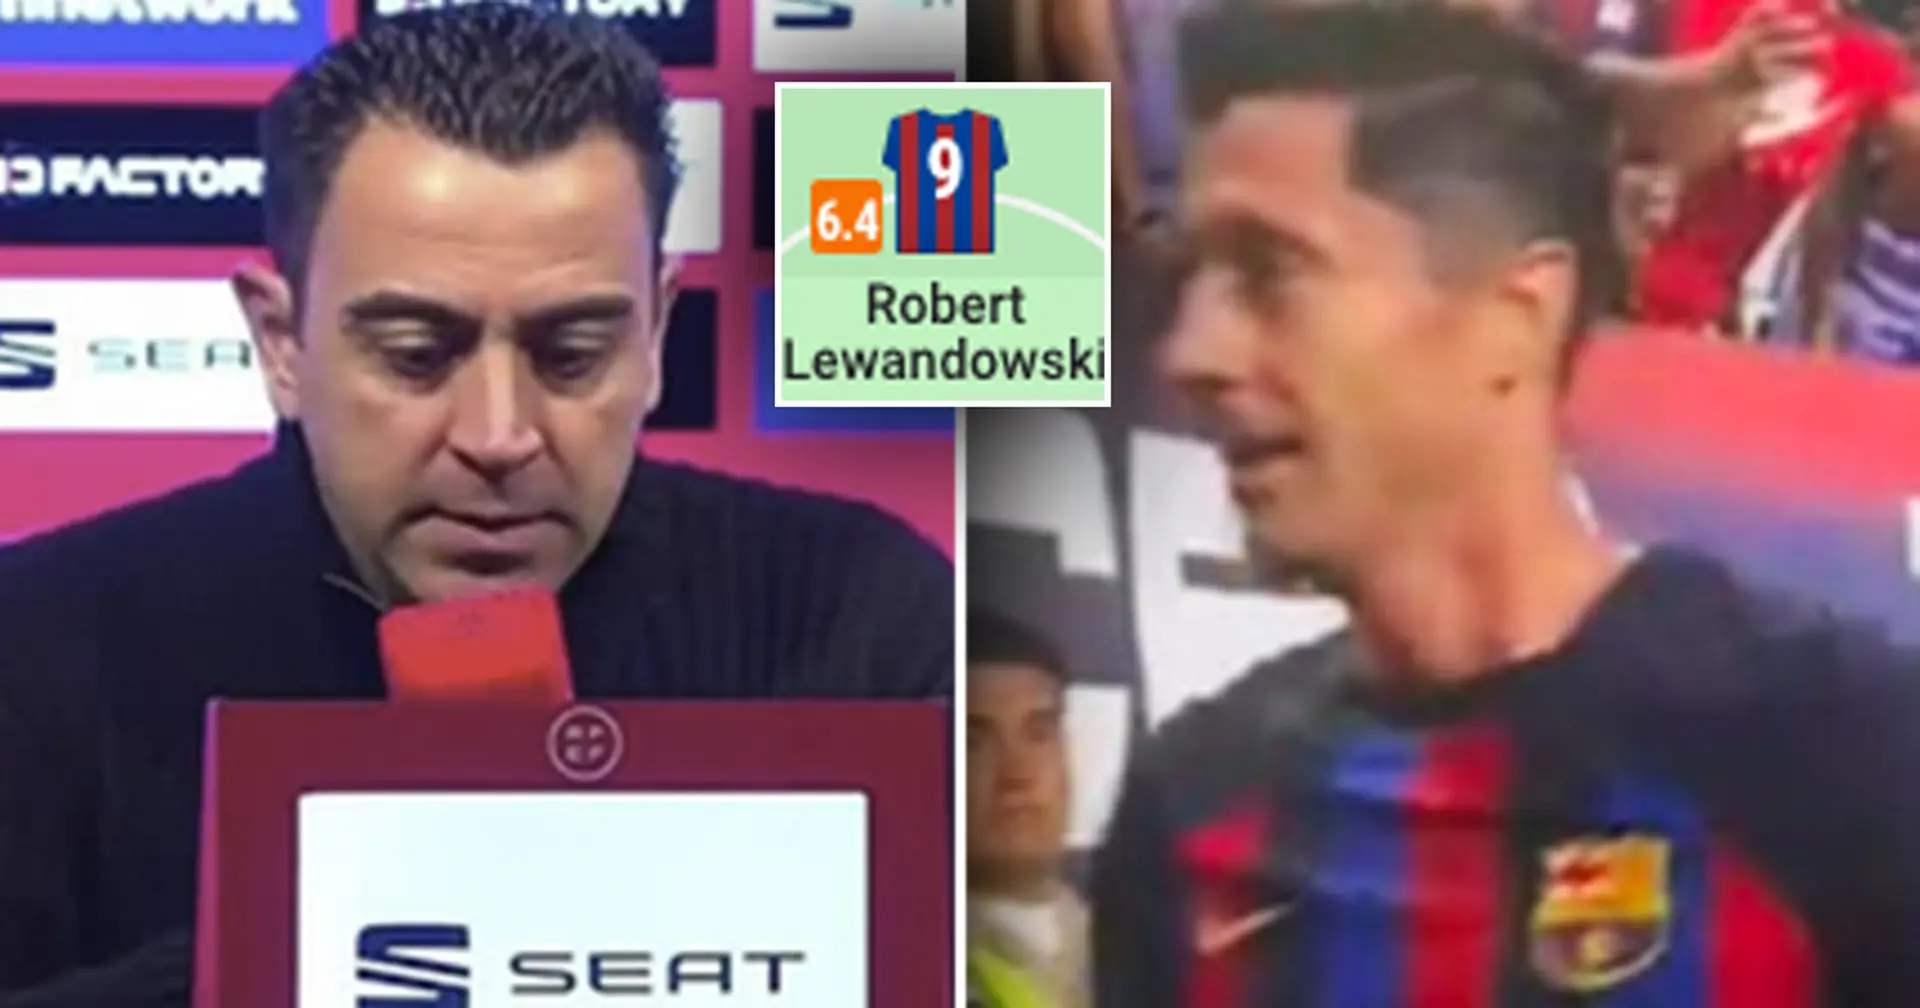 "Wir müssen auch ihn hervorheben": Xavi spricht über Lewandowski, der gegen Real Sociedad torlos blieb